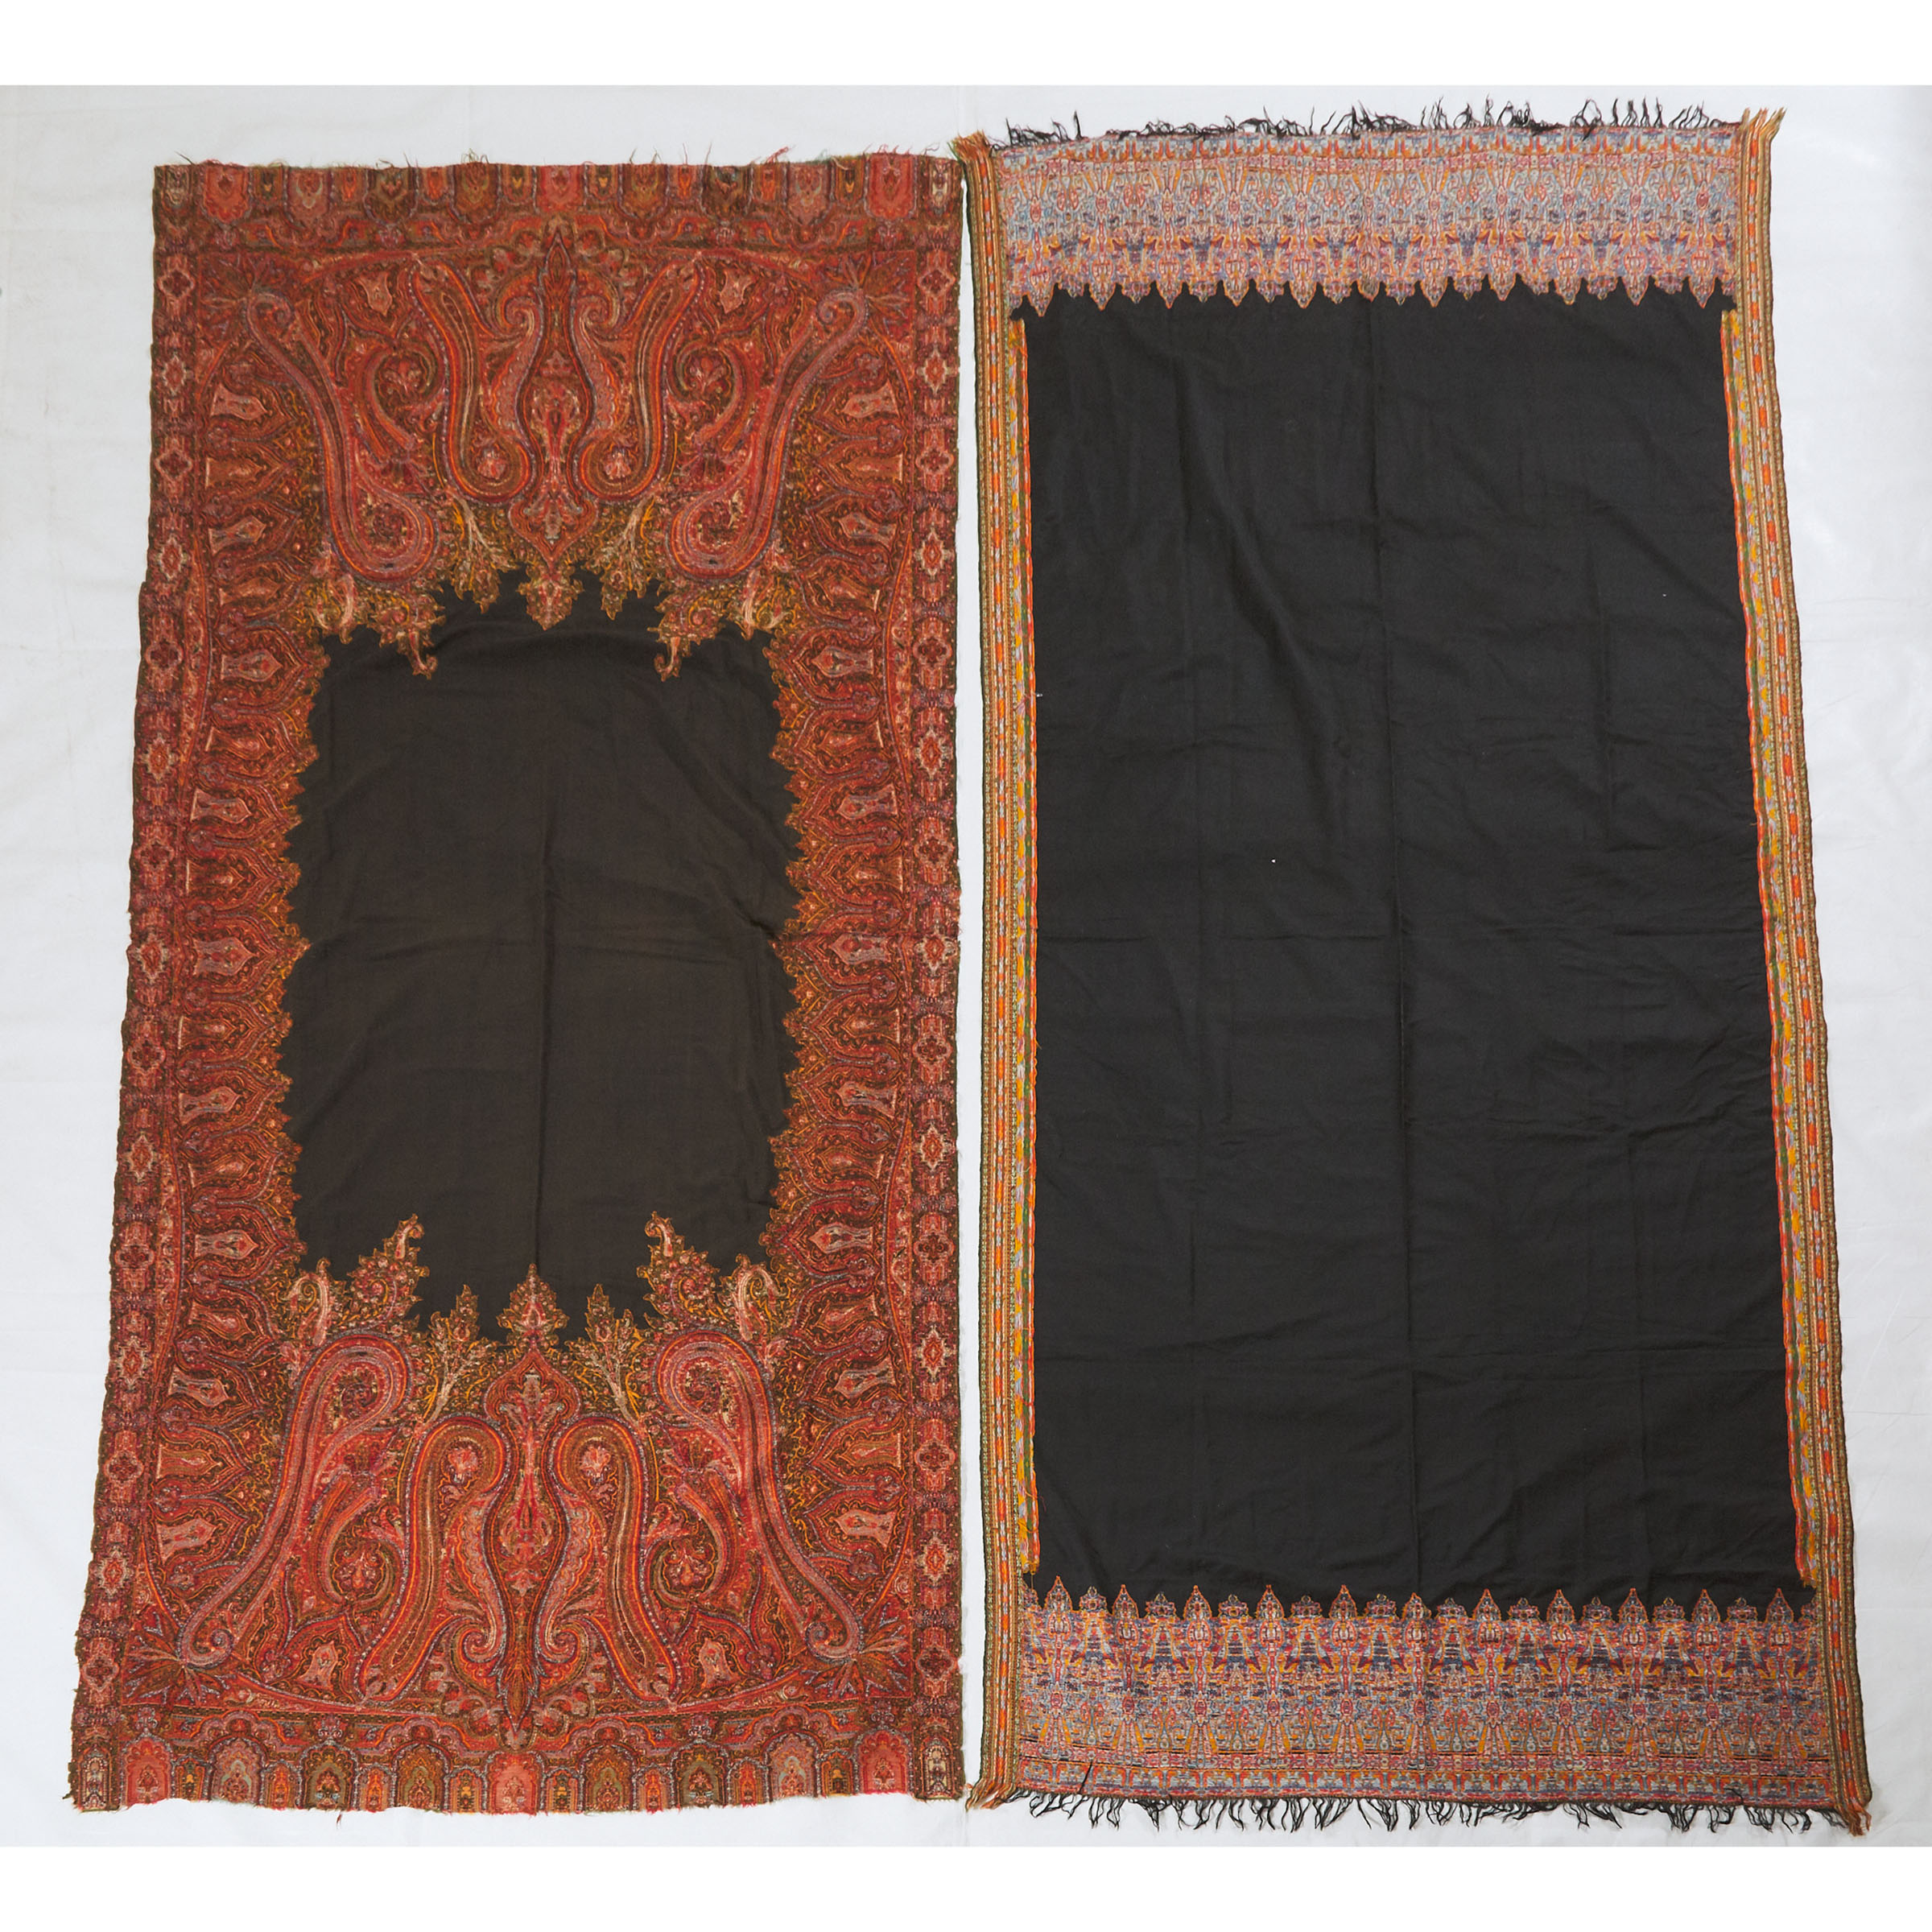 Two Kashmiri Textiles, Late 19th Century